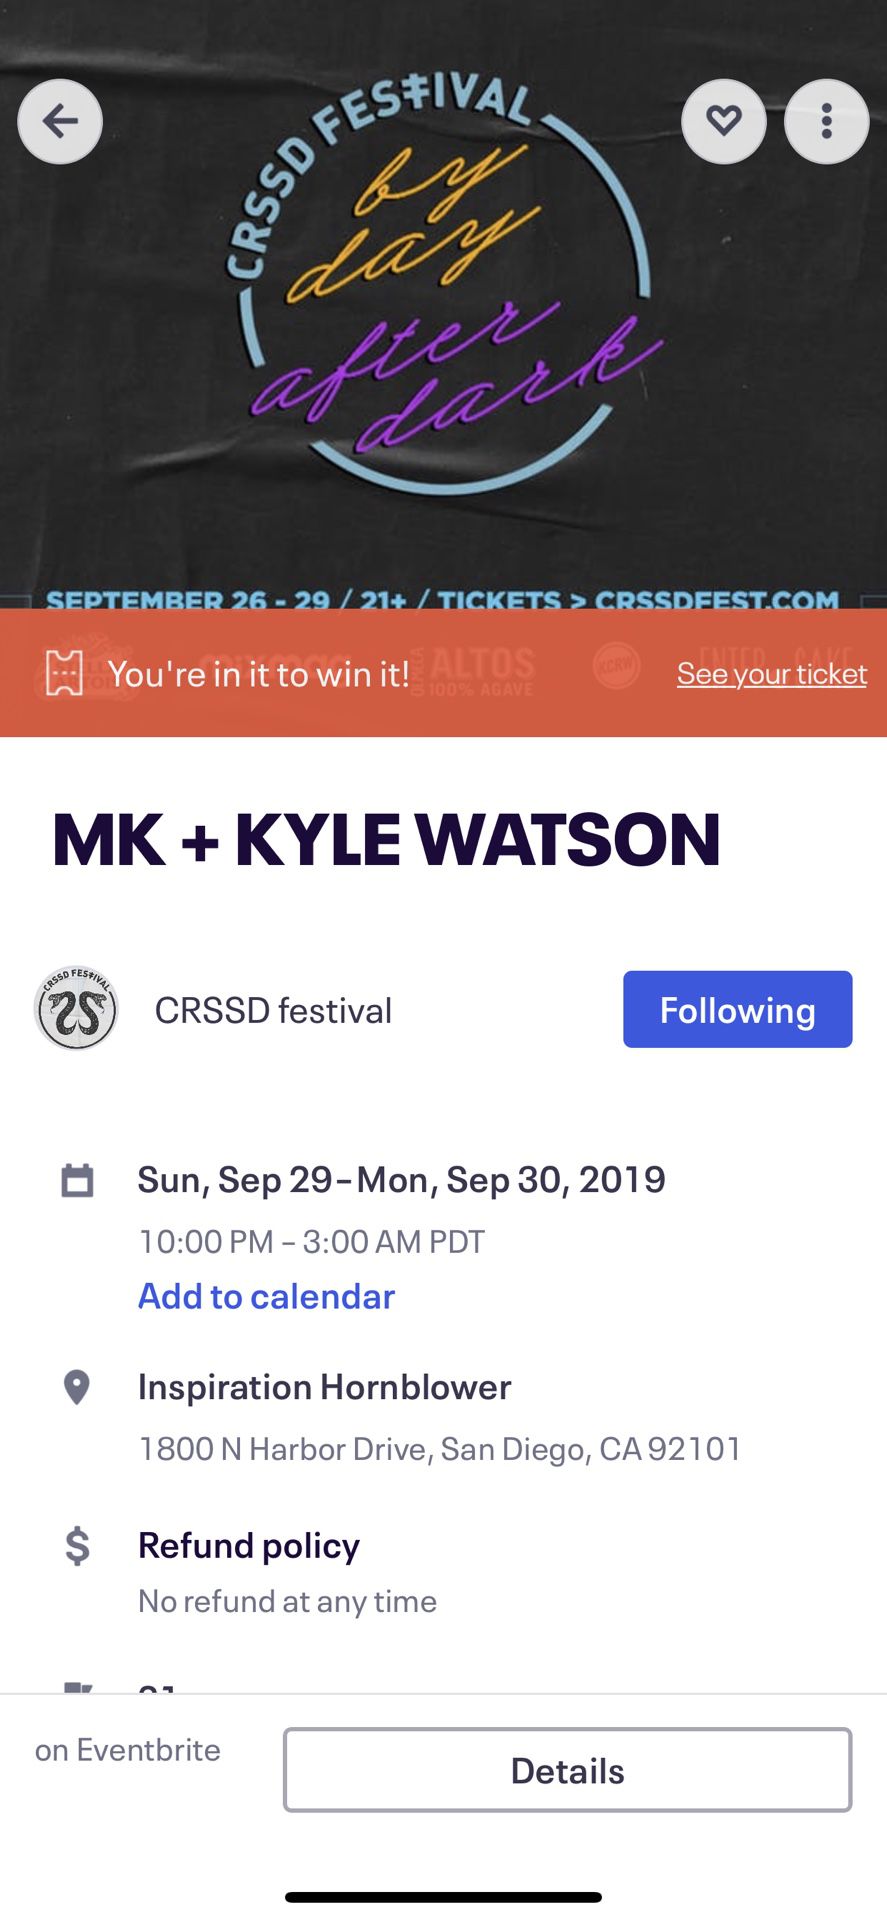 CRSSD After Dark: MK + Kyle Watson